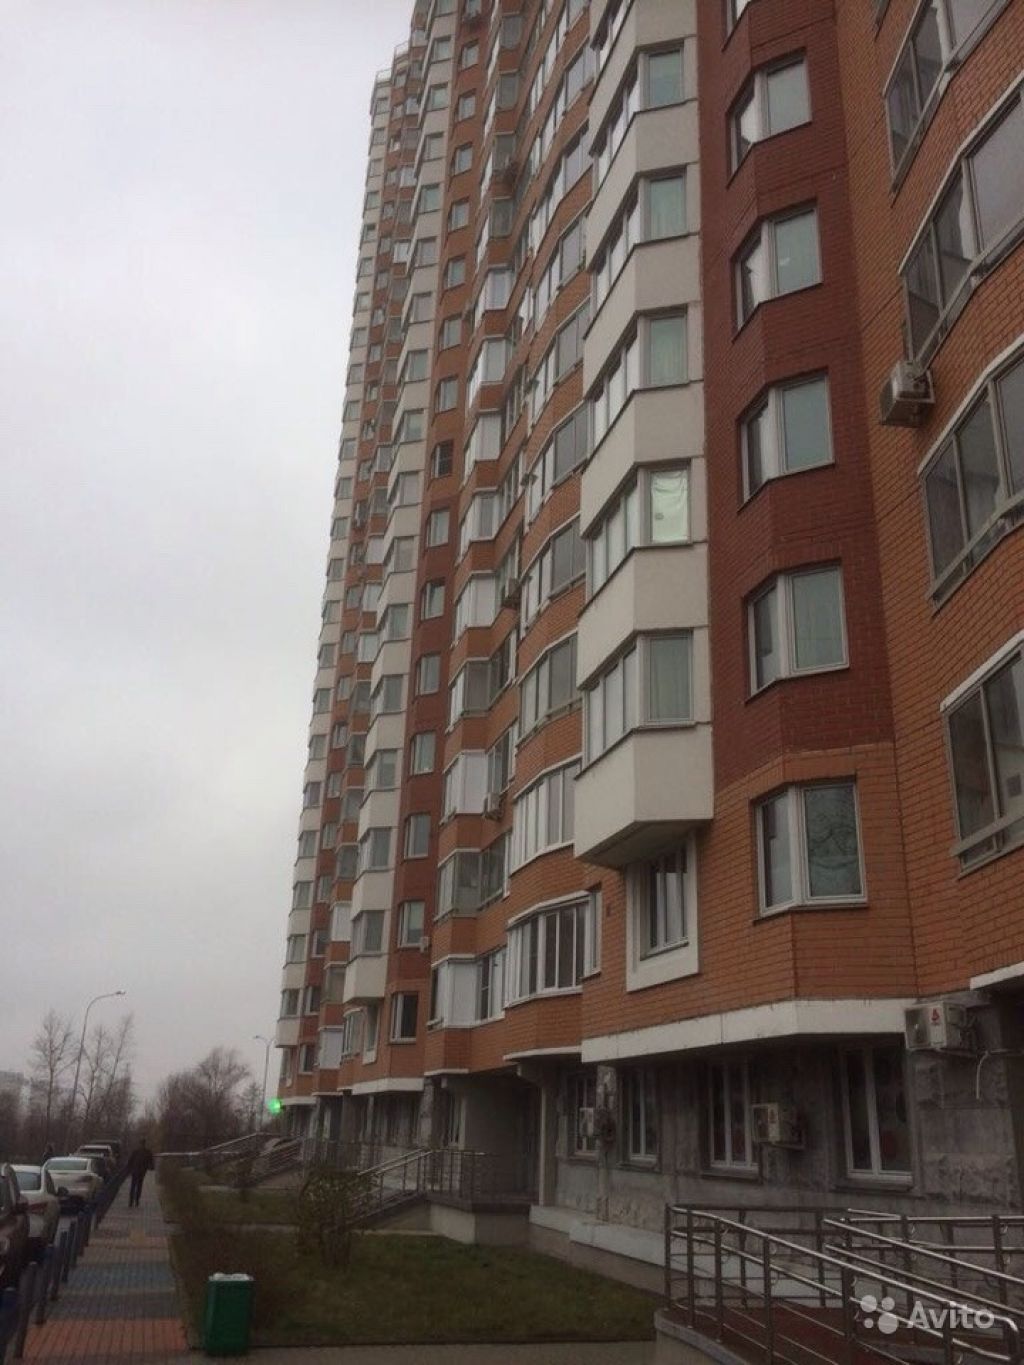 Продам квартиру 2-к квартира 71 м² на 18 этаже 25-этажного монолитного дома в Москве. Фото 1